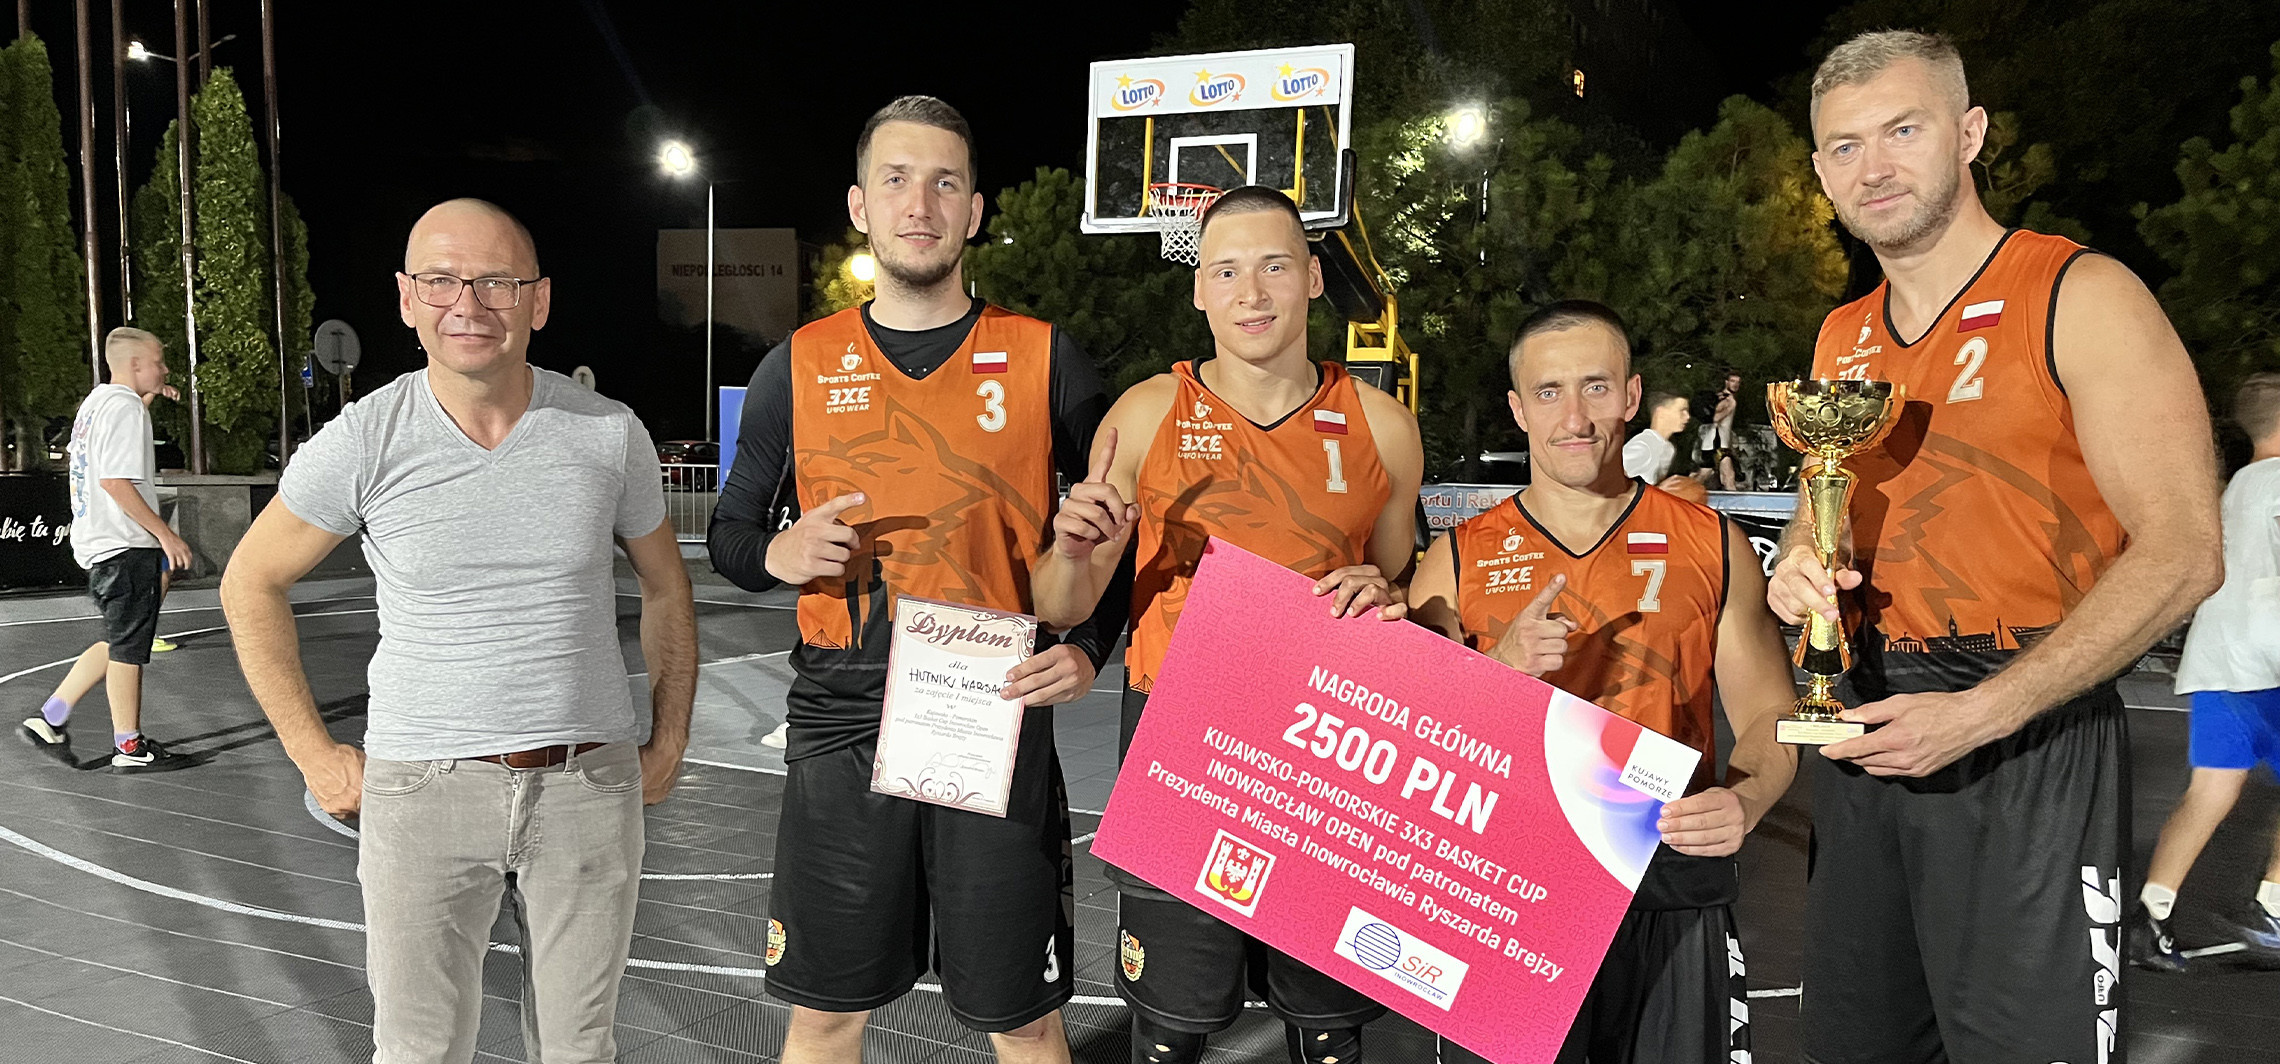 Inowrocław - Poznaliśmy zwycięzców koszykarskiego turnieju 3x3